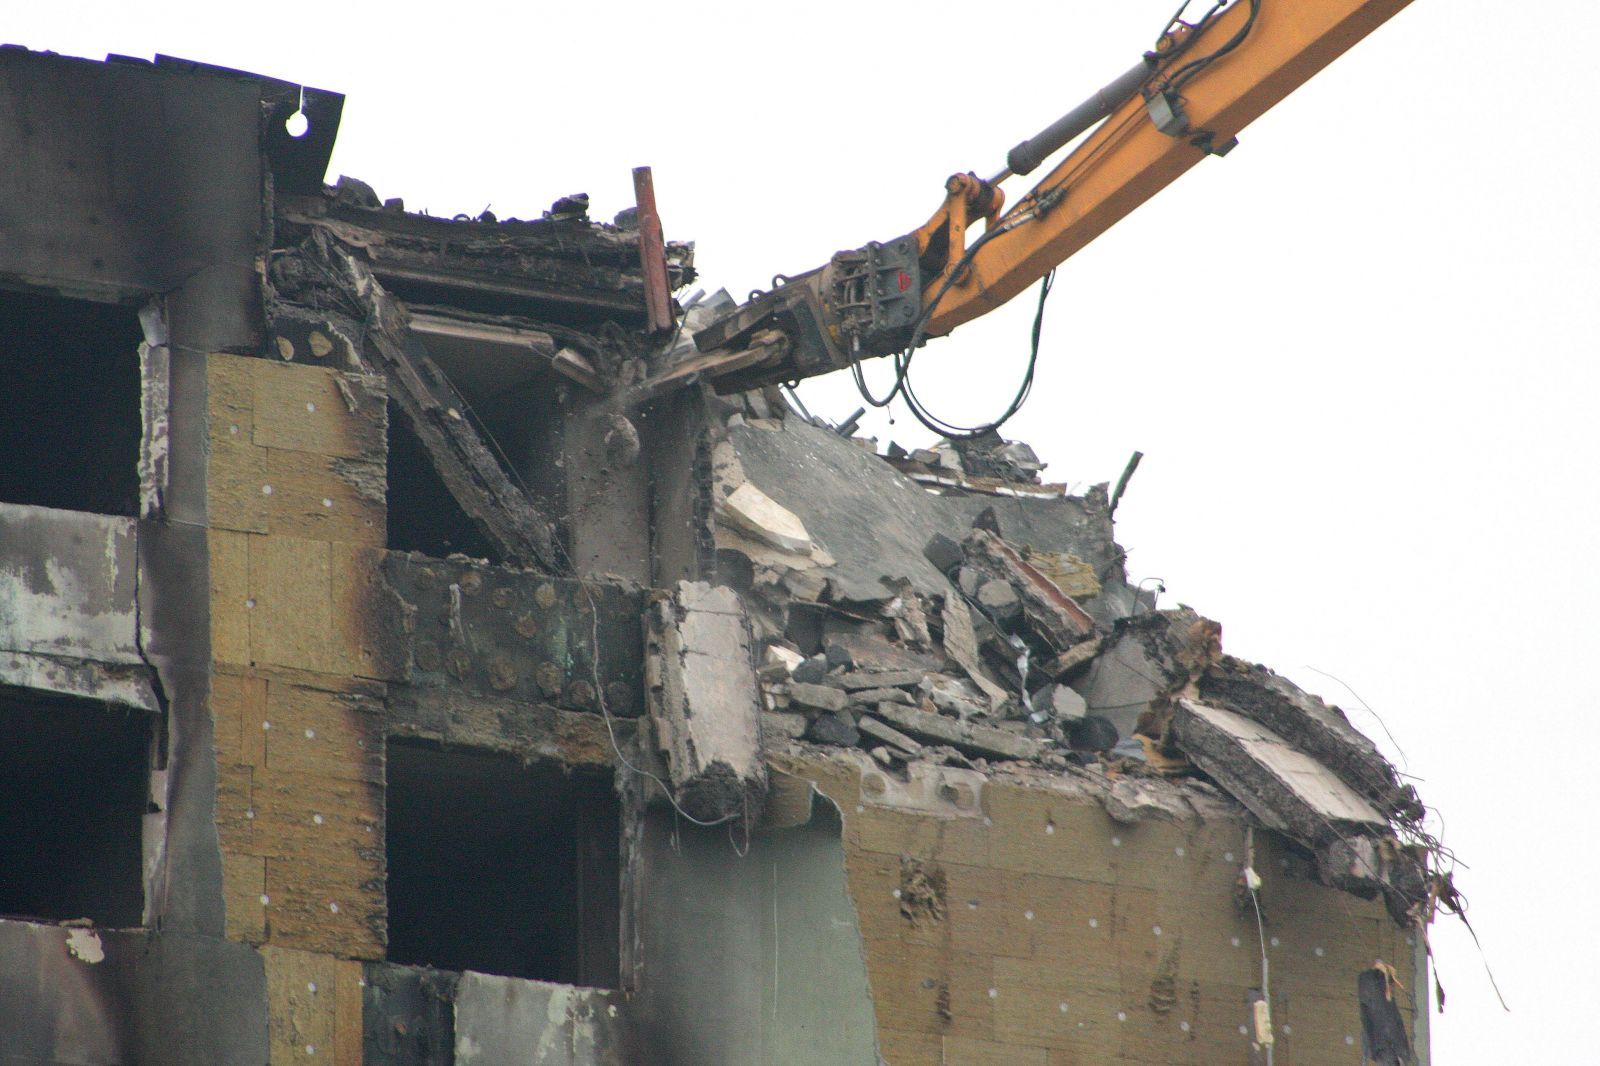 Prešovskú bytovku budú musieť zbúrať úplne celú, tvrdí statik po prvom dni demolácie. Jej stav je kritický, celá sa rozpadáva